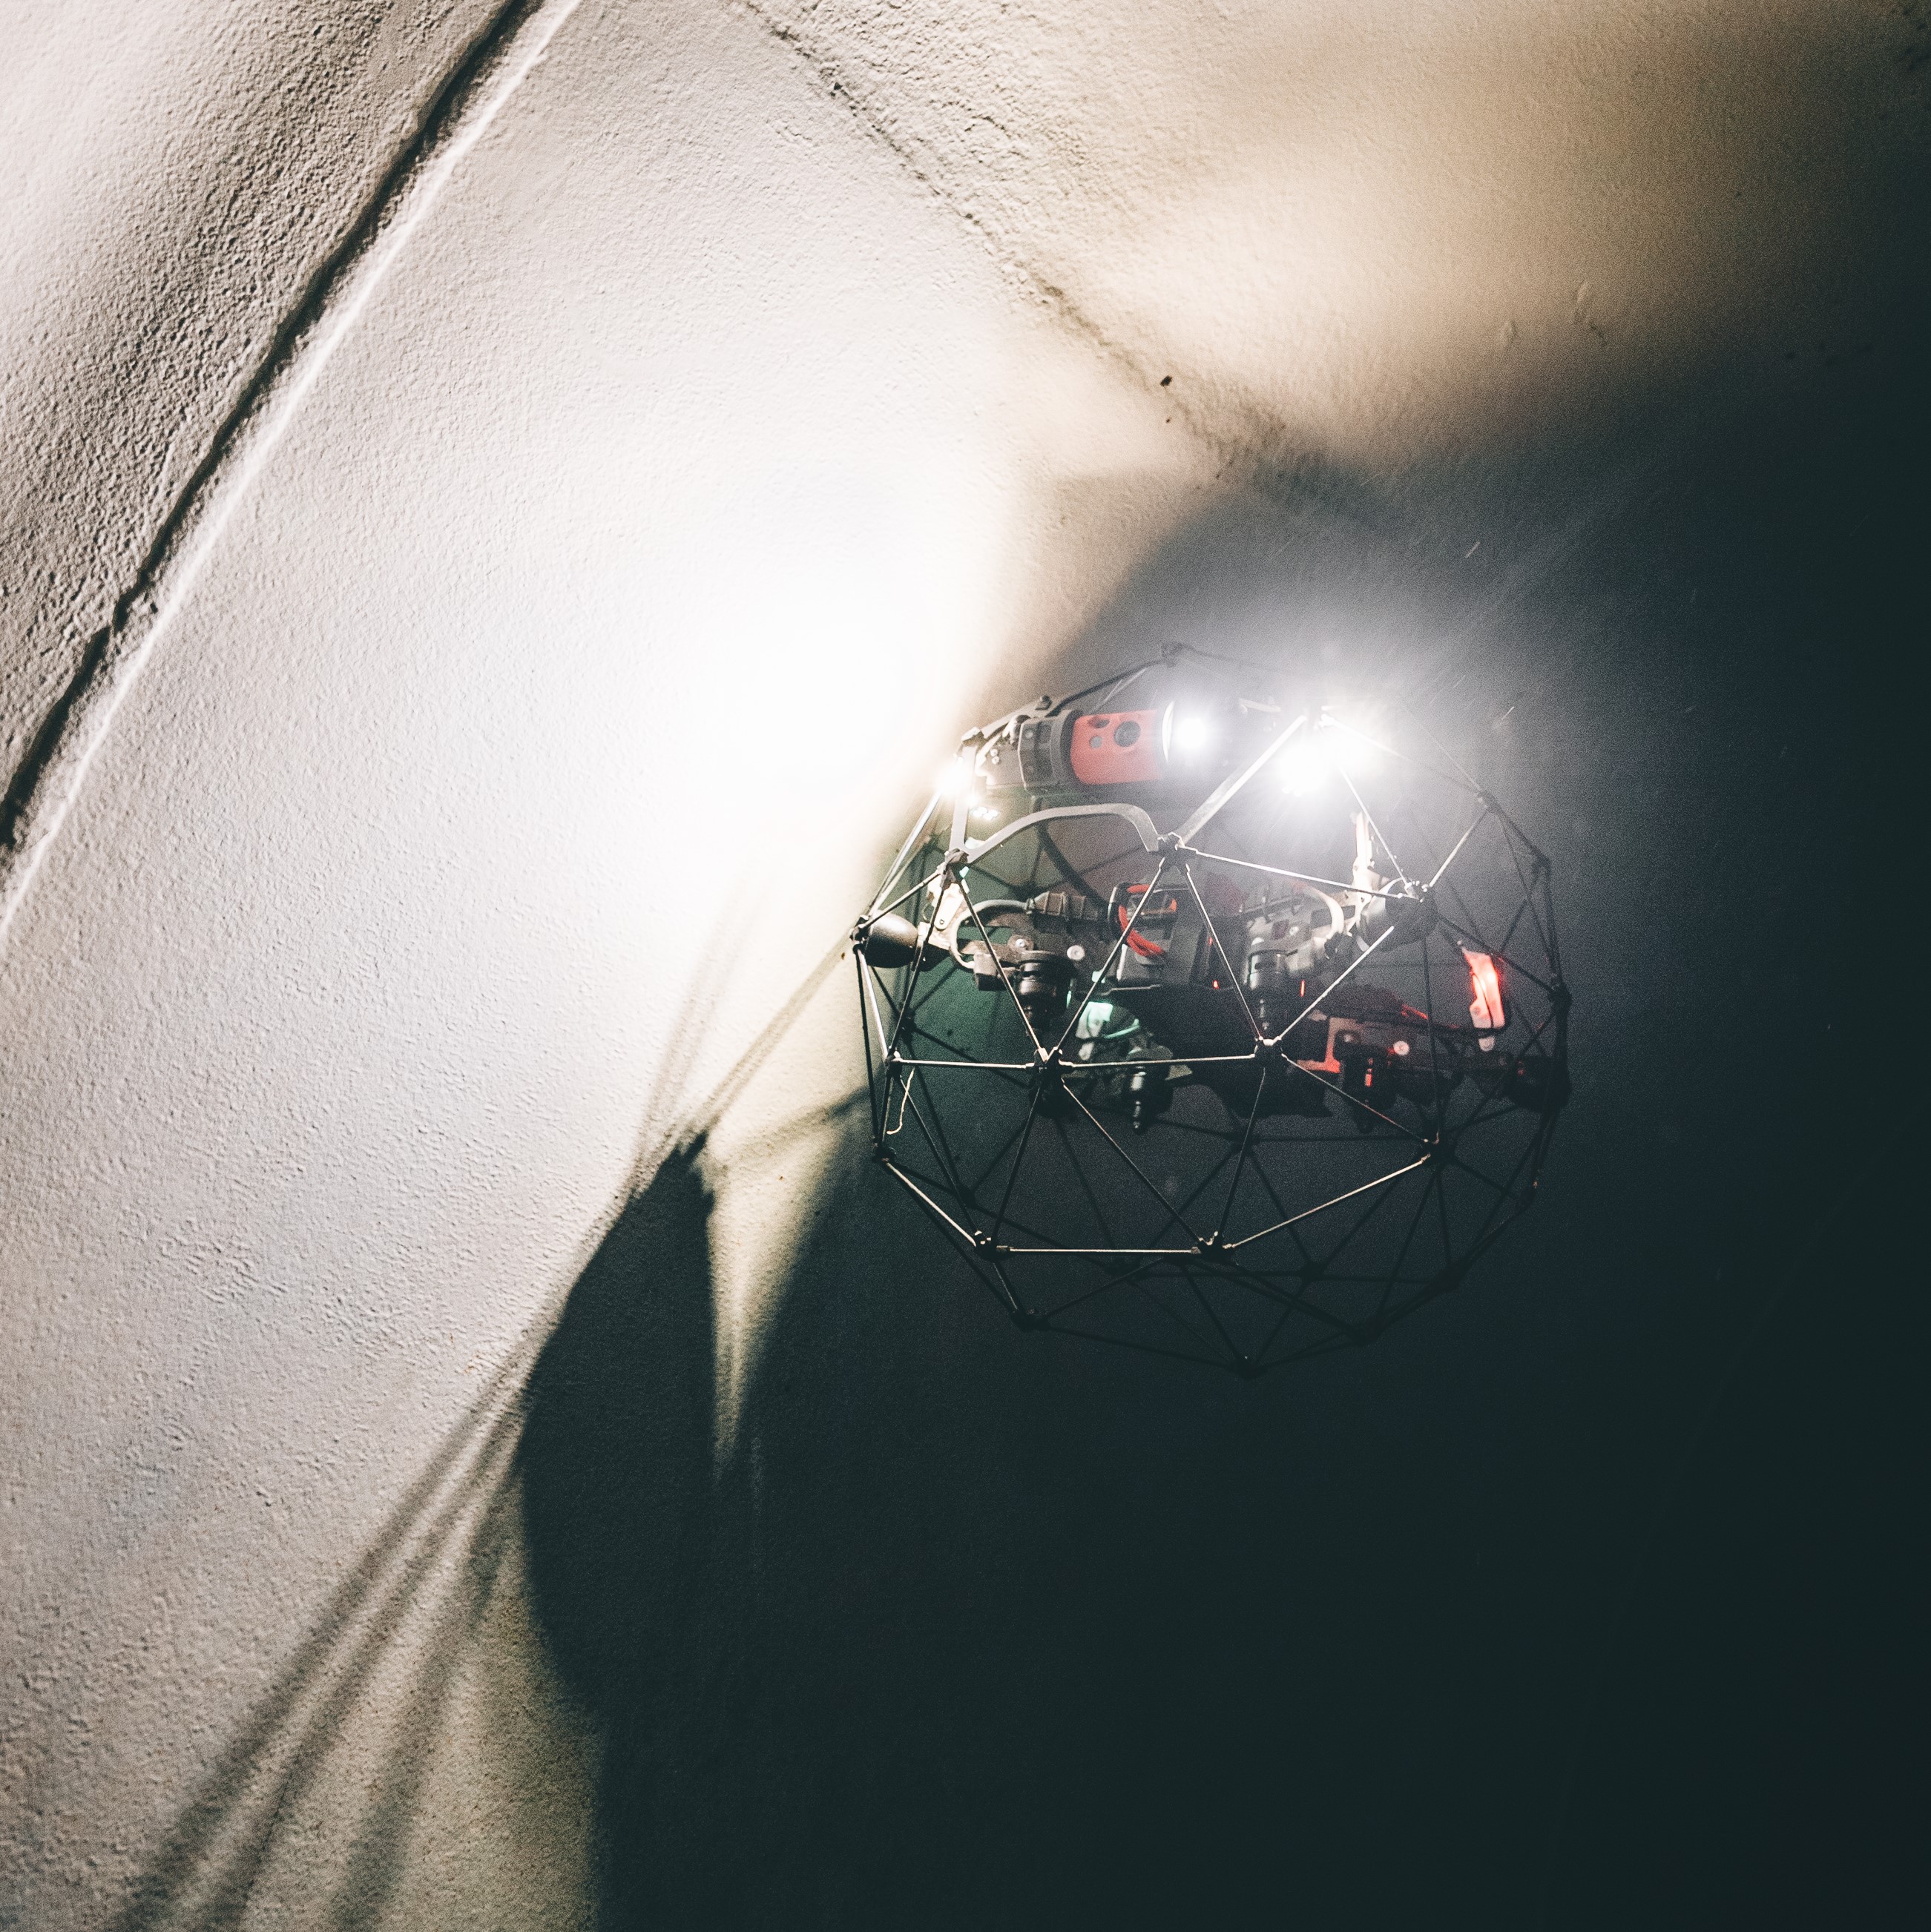 I droni come strumento di ispezioni visive in spazi confinati